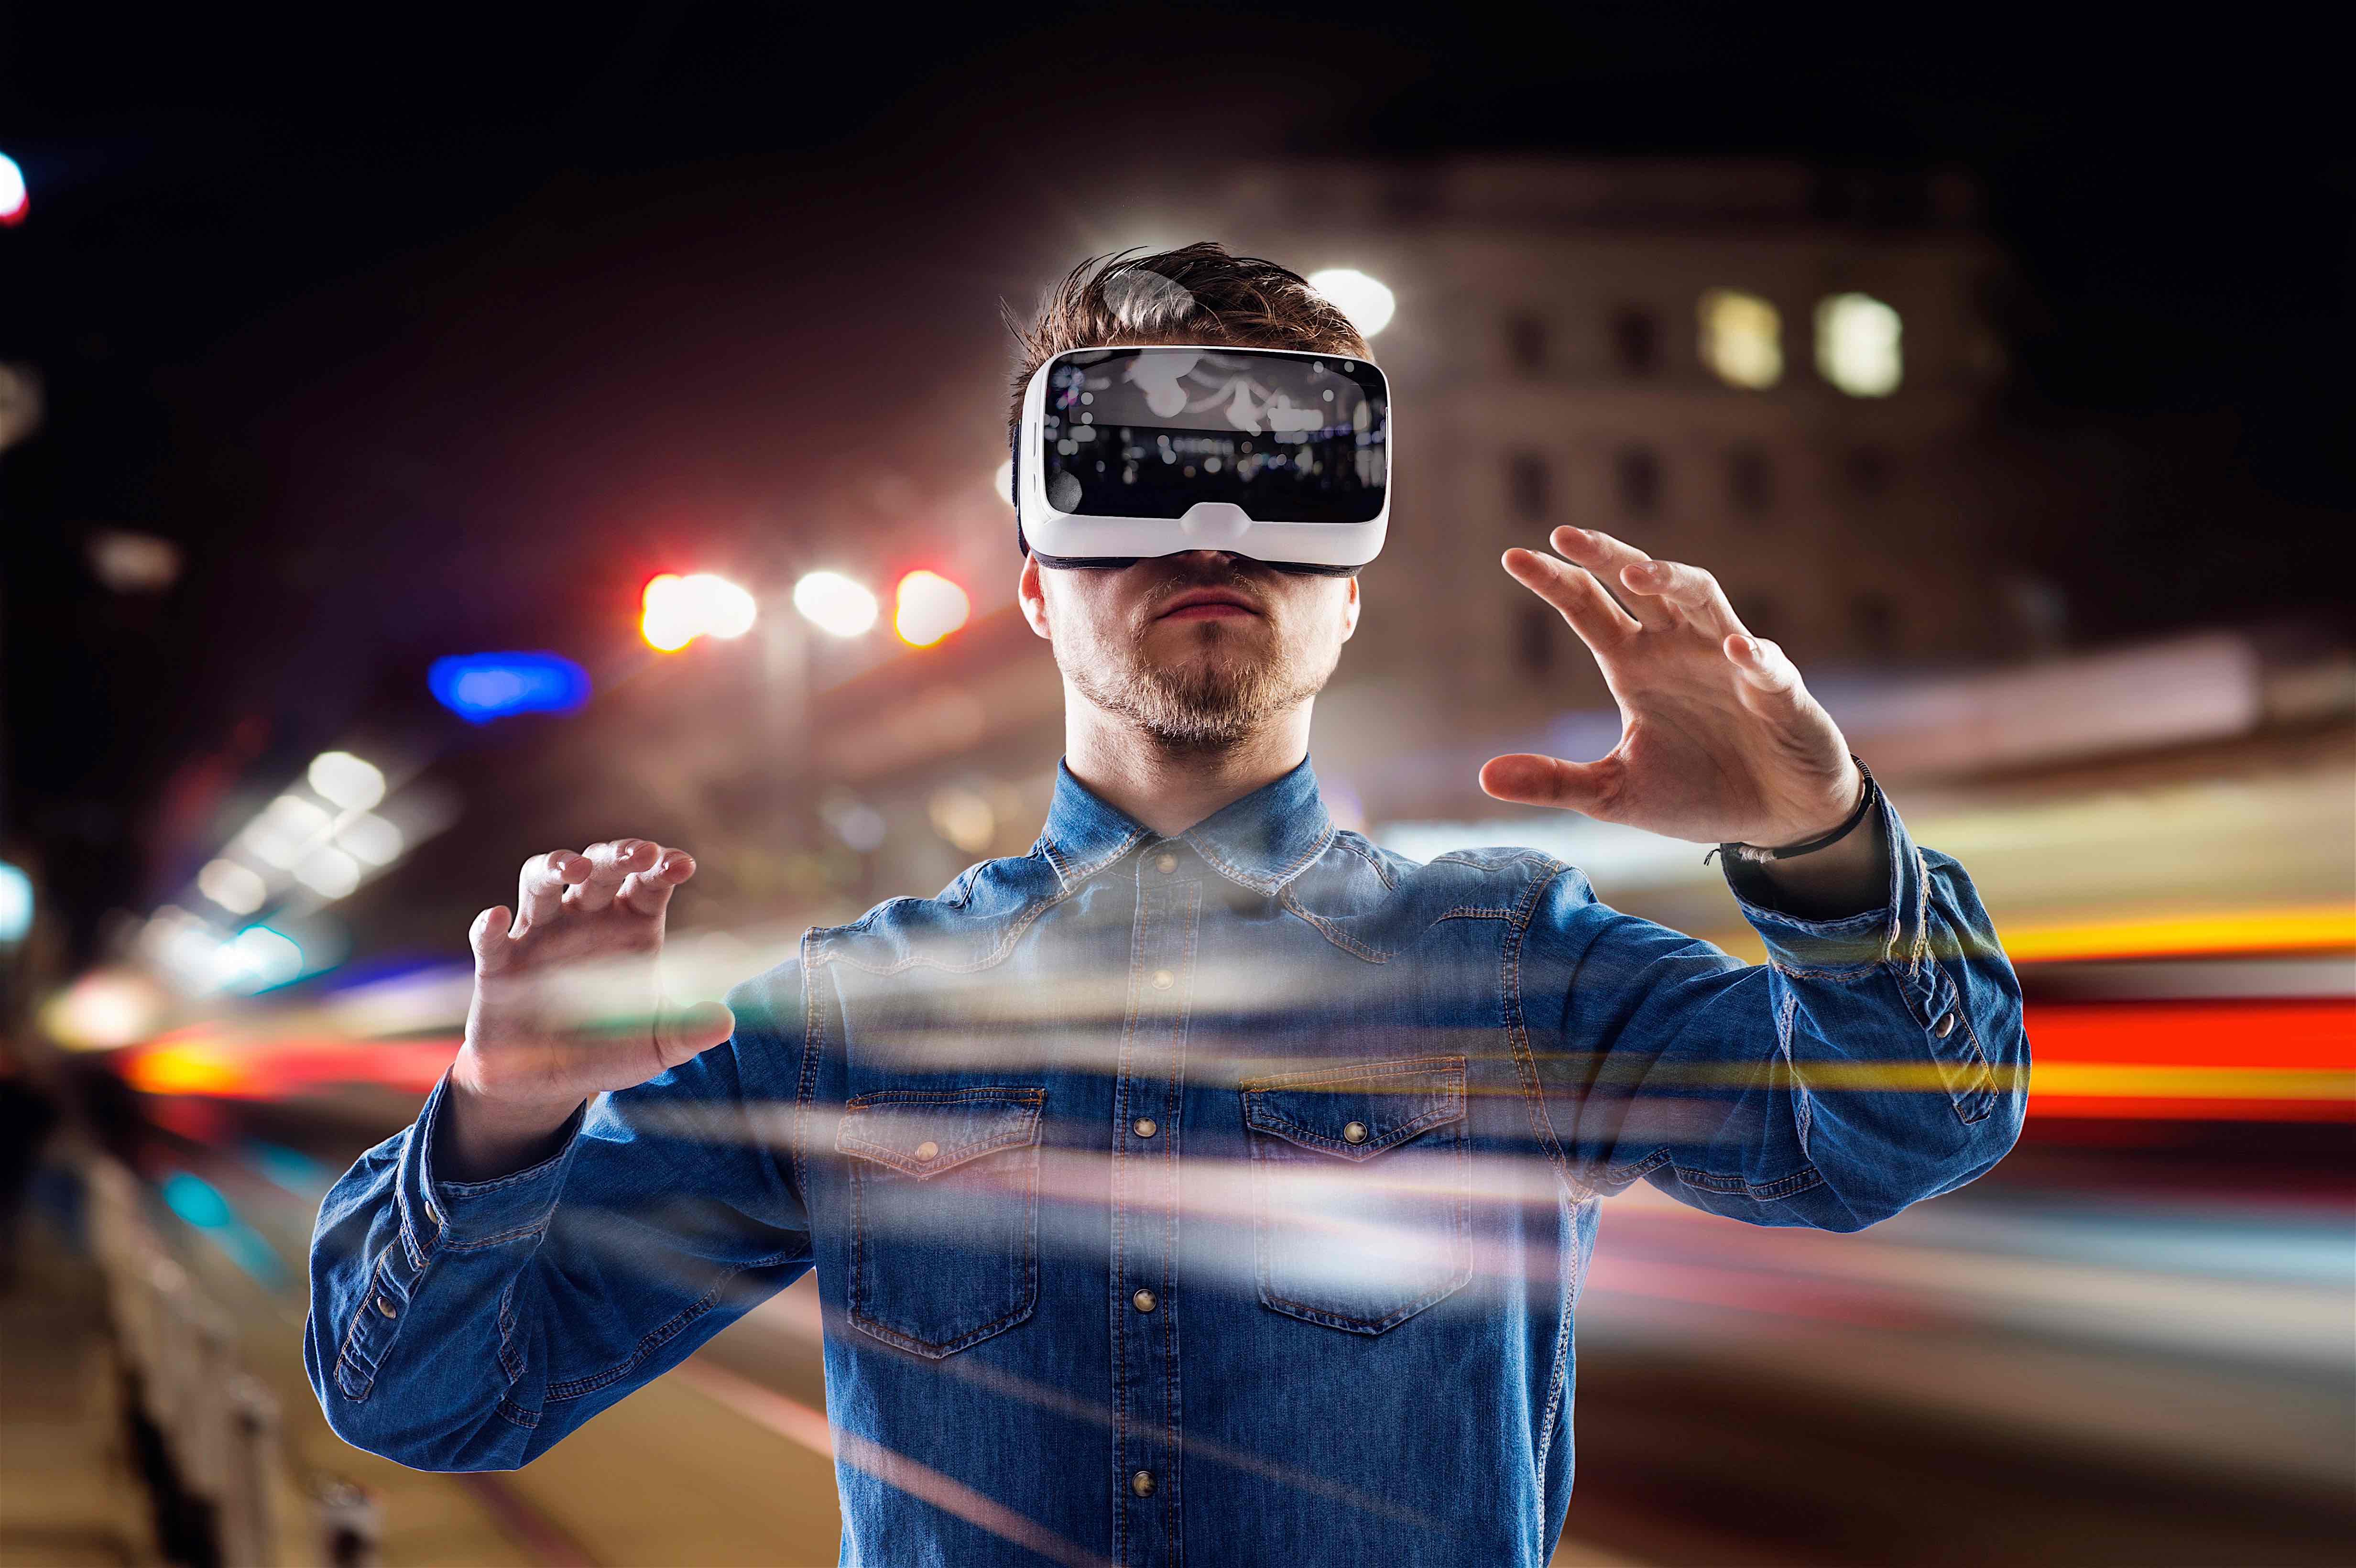 Картинка очки реальности. VR виртуальная реальность. Вируальная реальность. Визуальная реальность. Человек в очках виртуальной реальности.